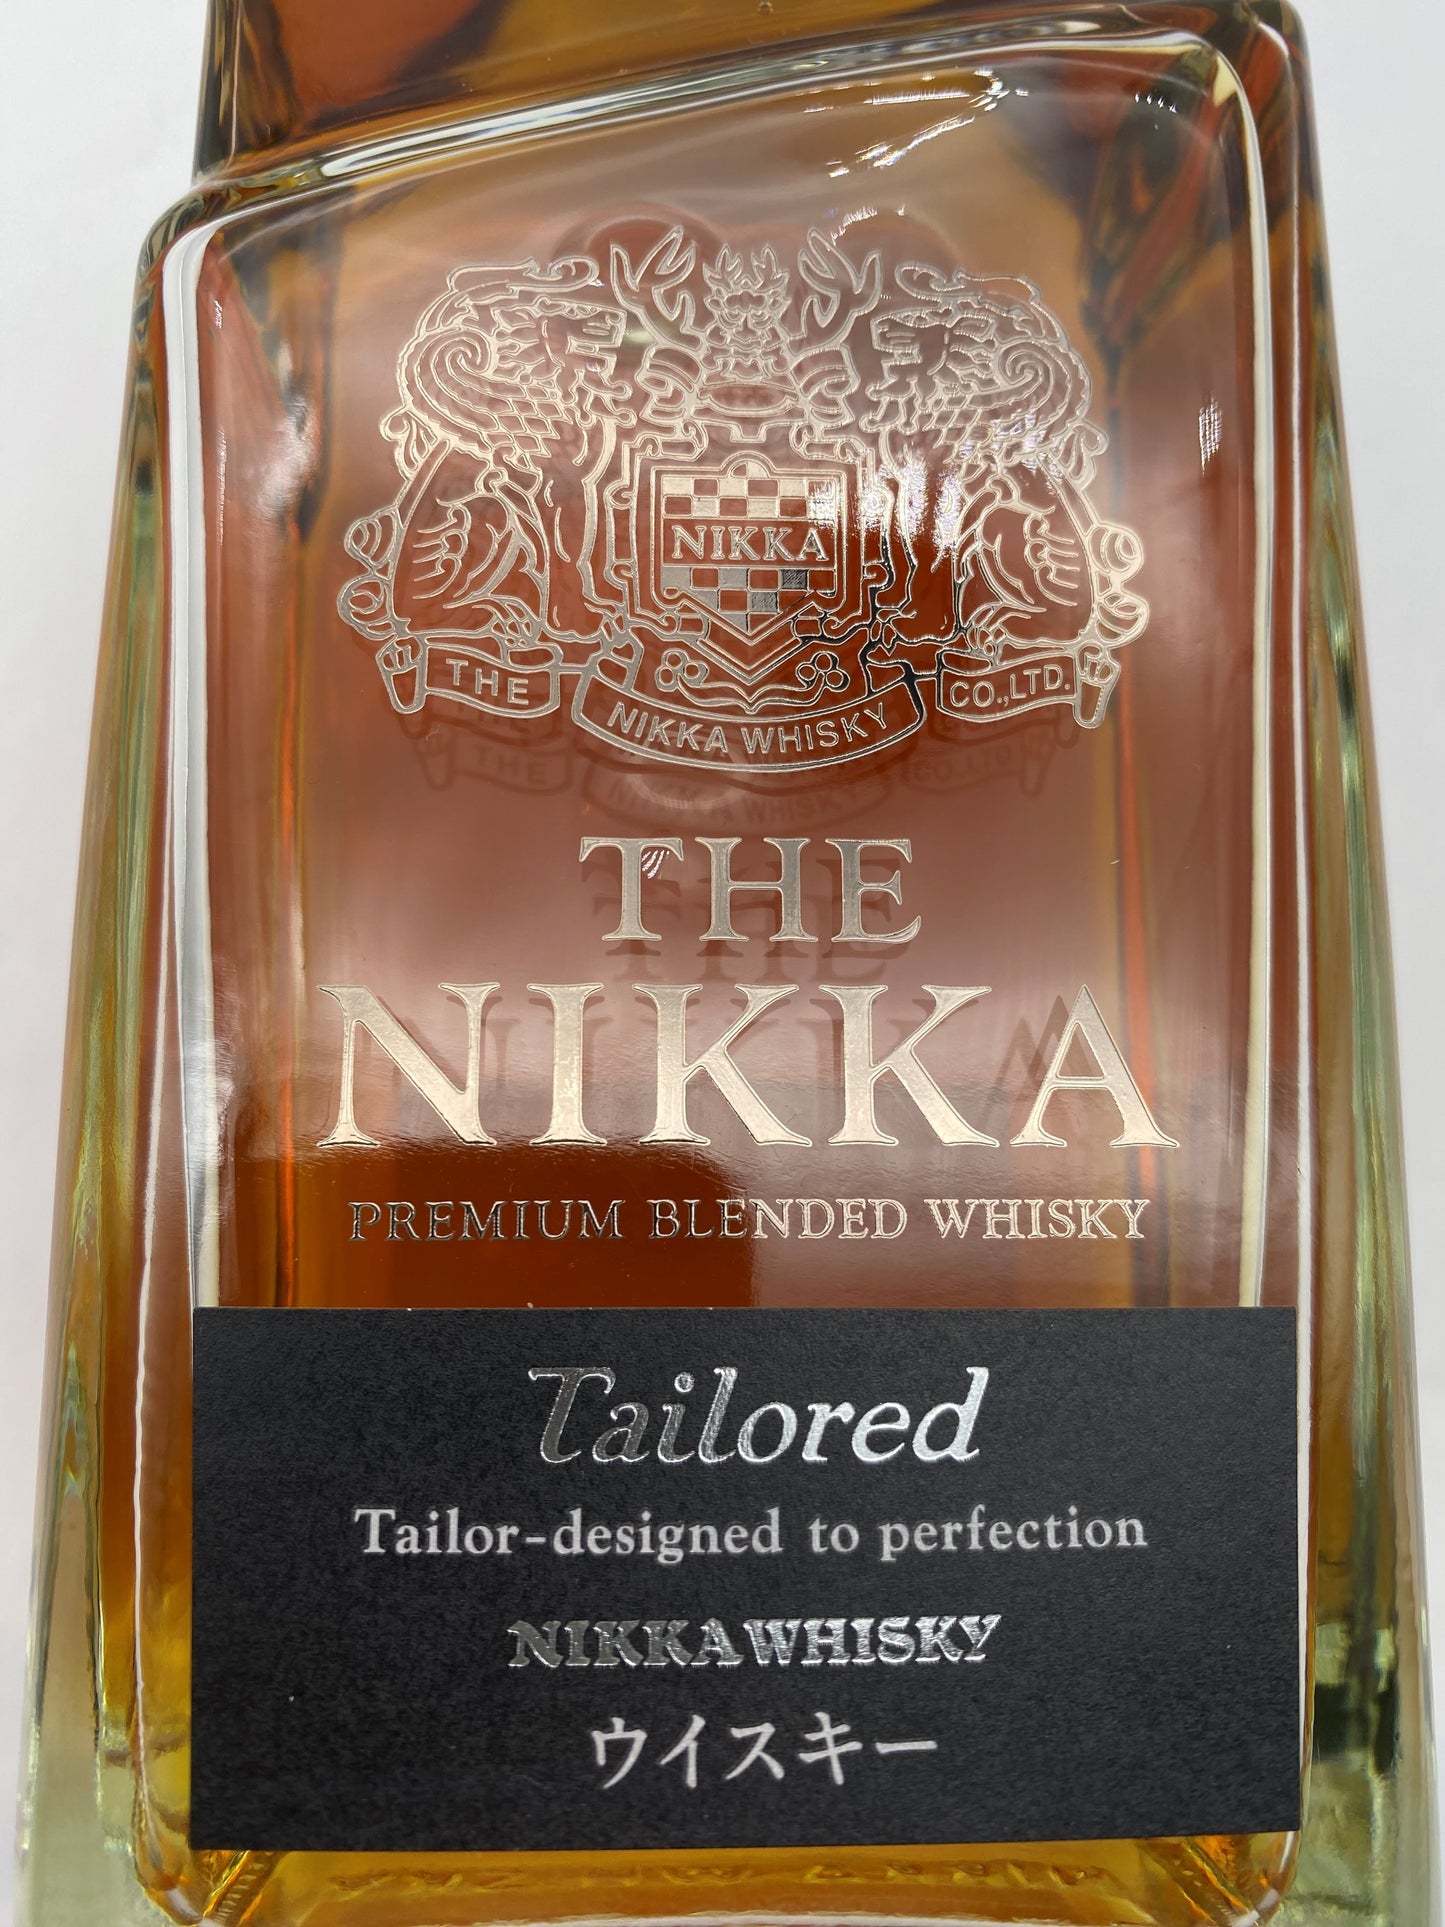 The Nikka Tailored